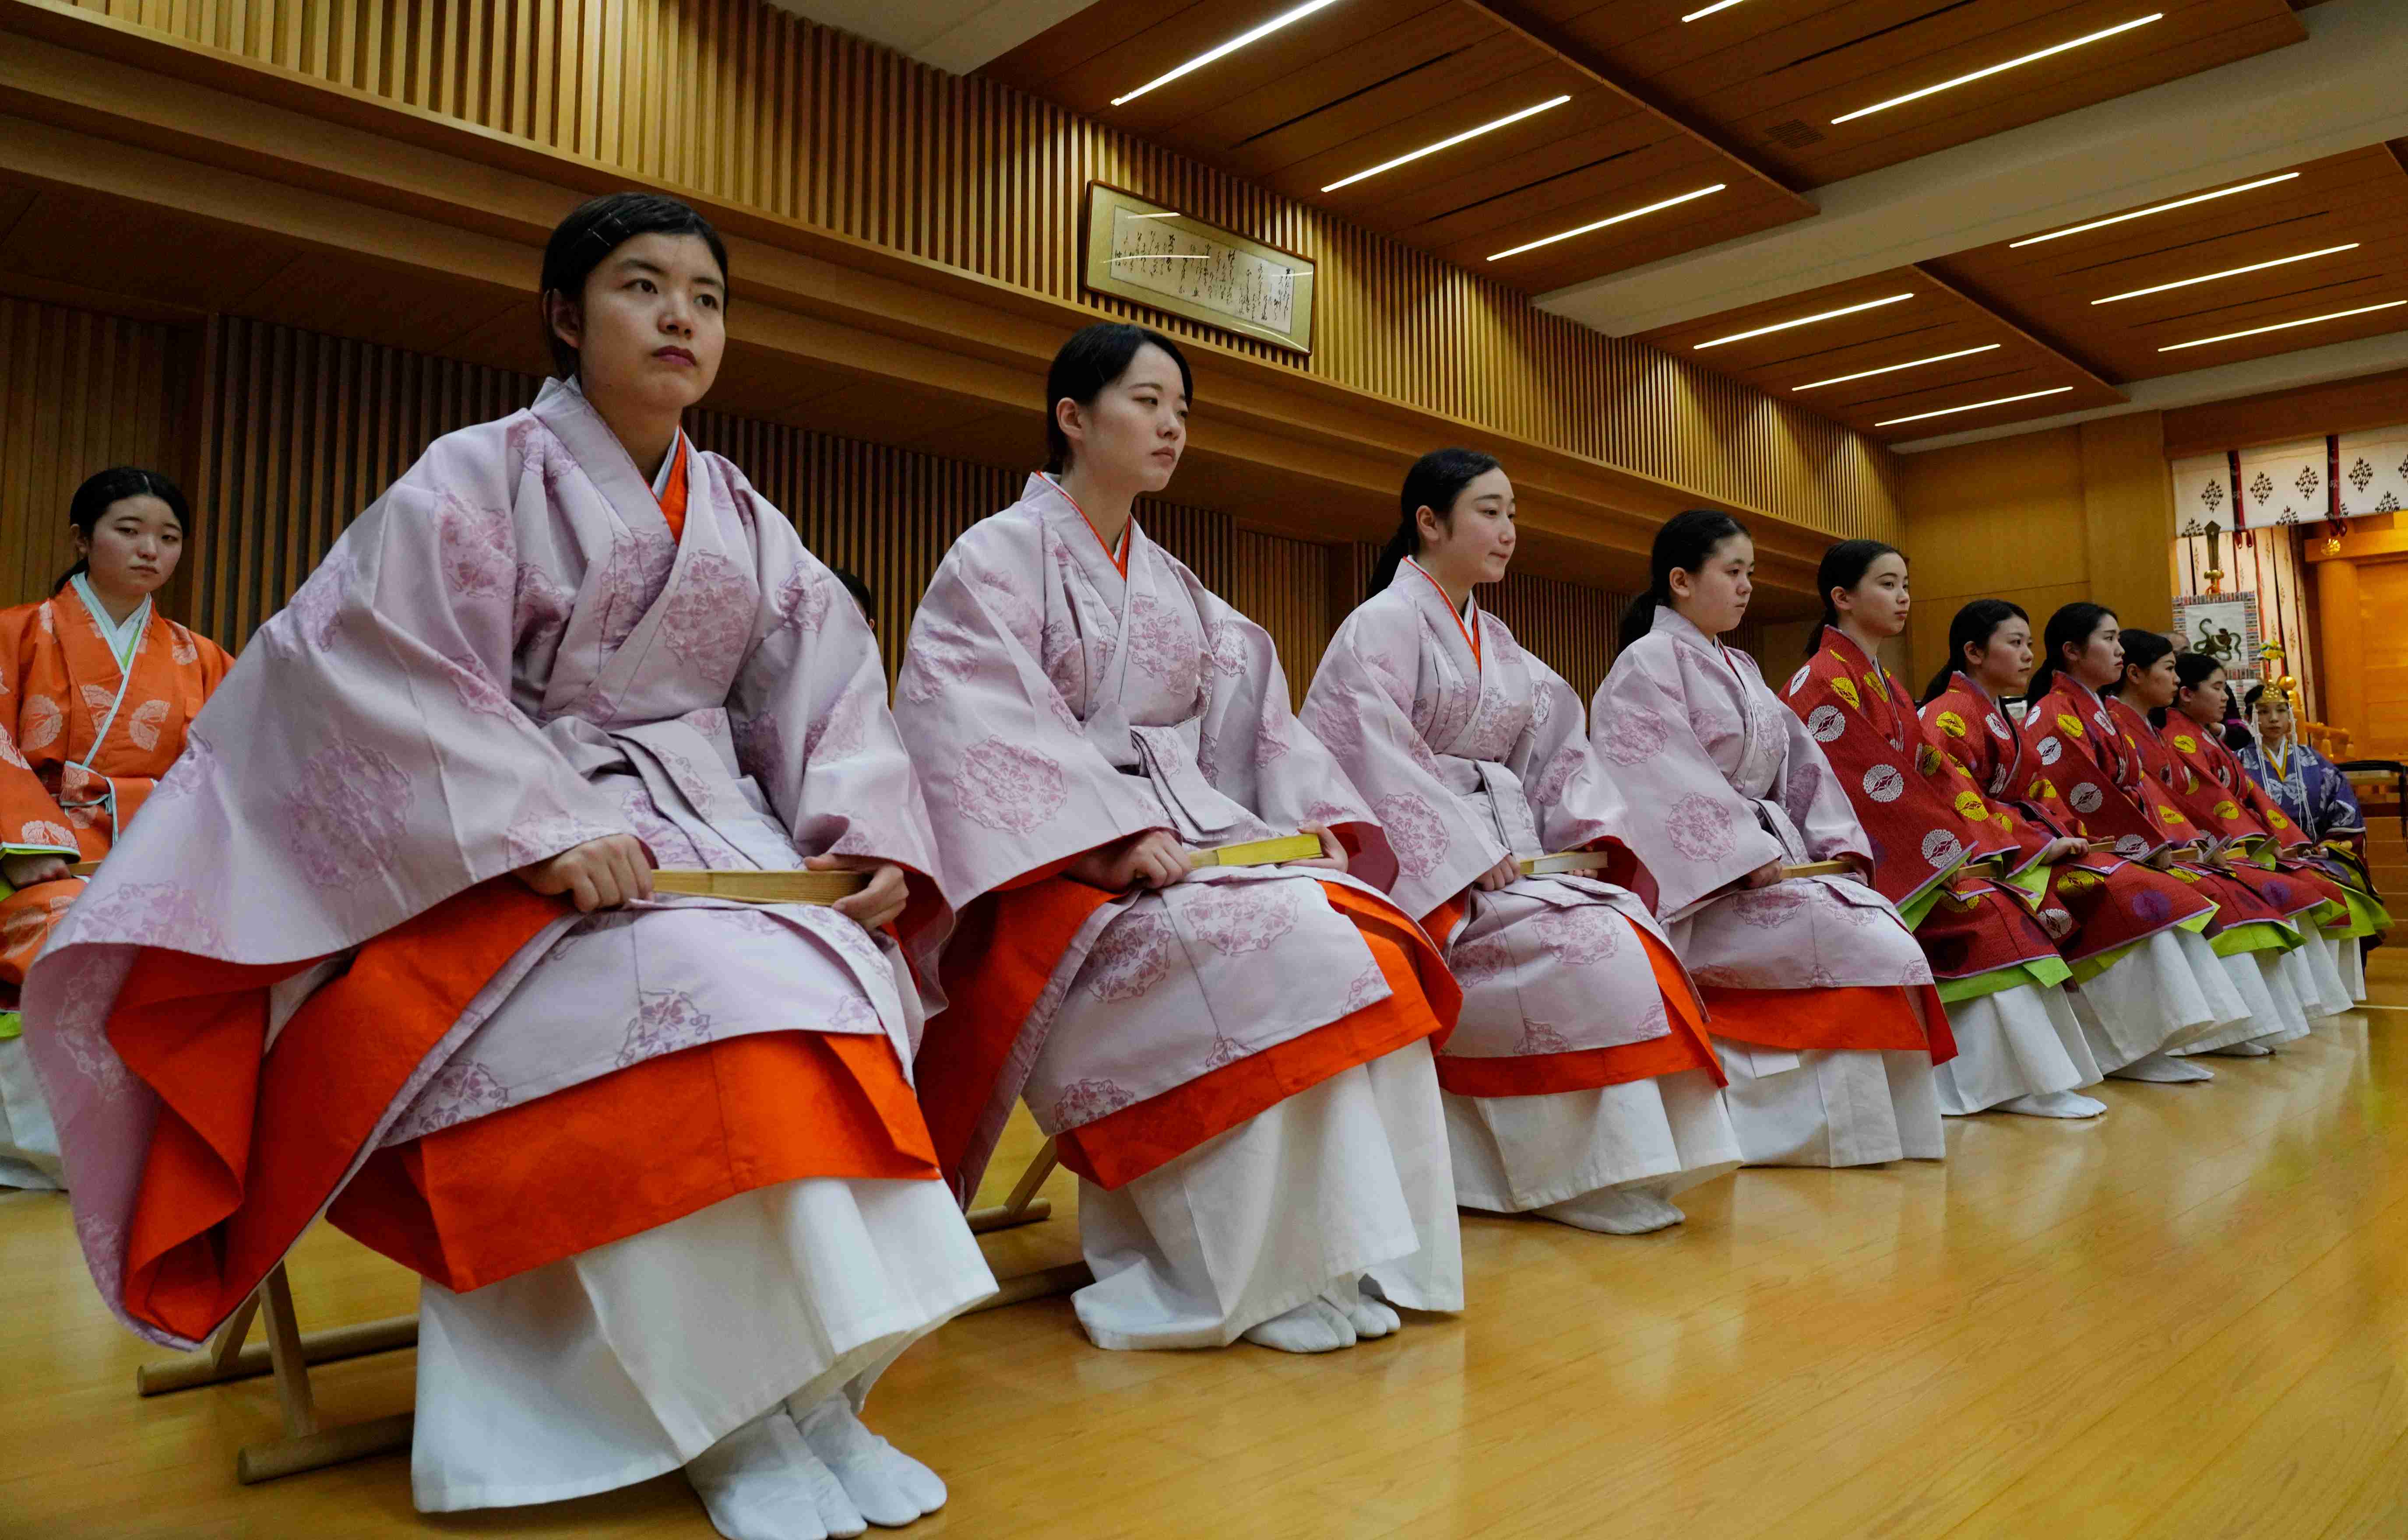 日本大学生参加成人礼 现场仪式感满满